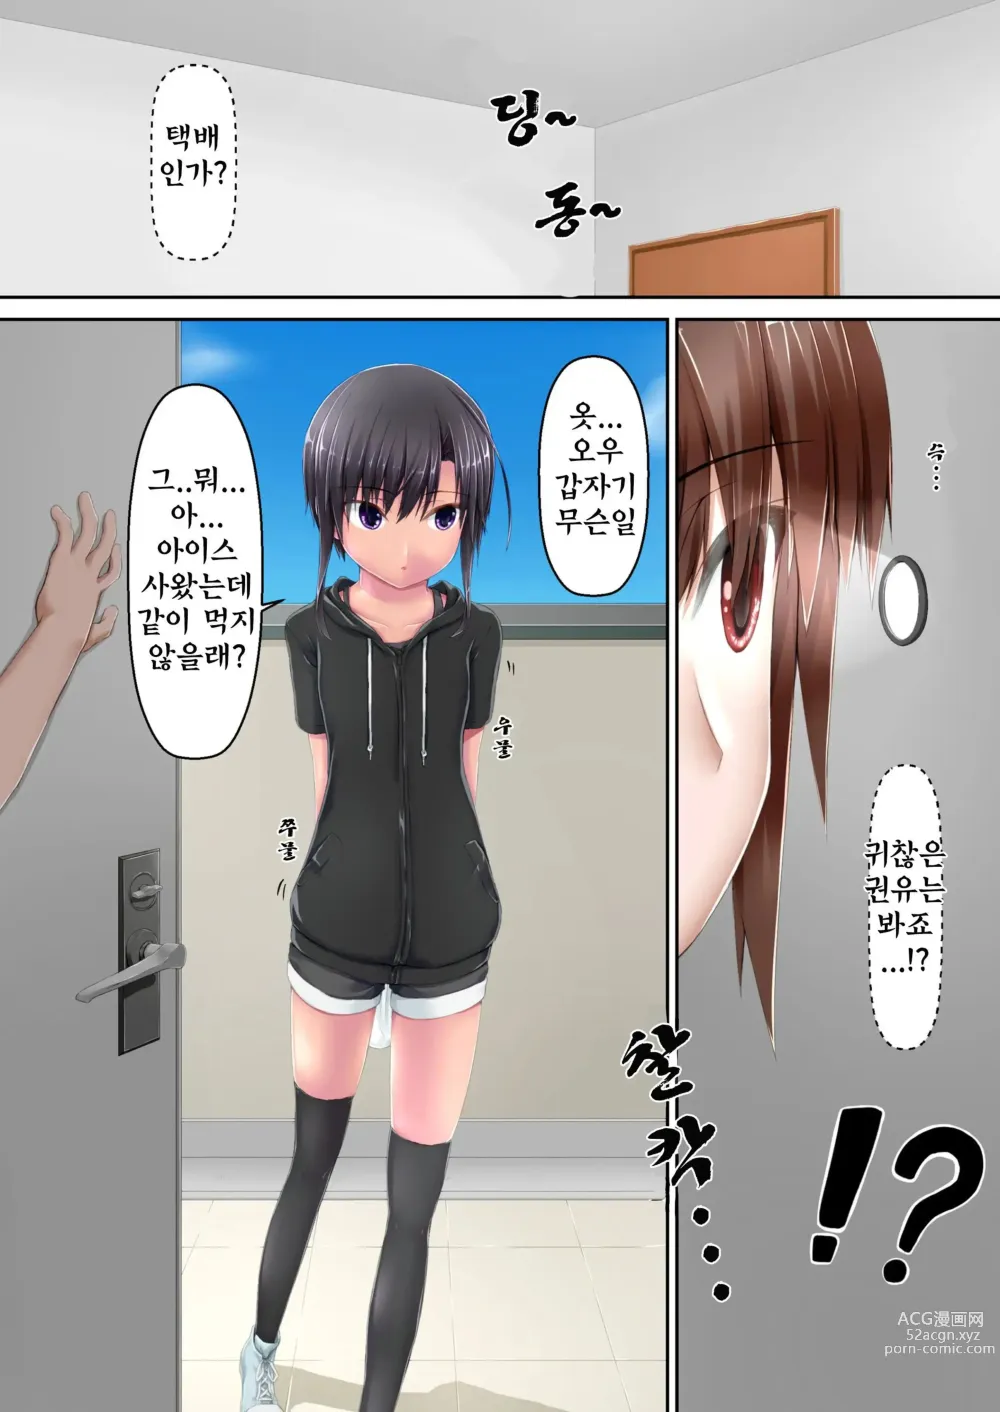 Page 3 of doujinshi Kuroneko Choco Ice 10